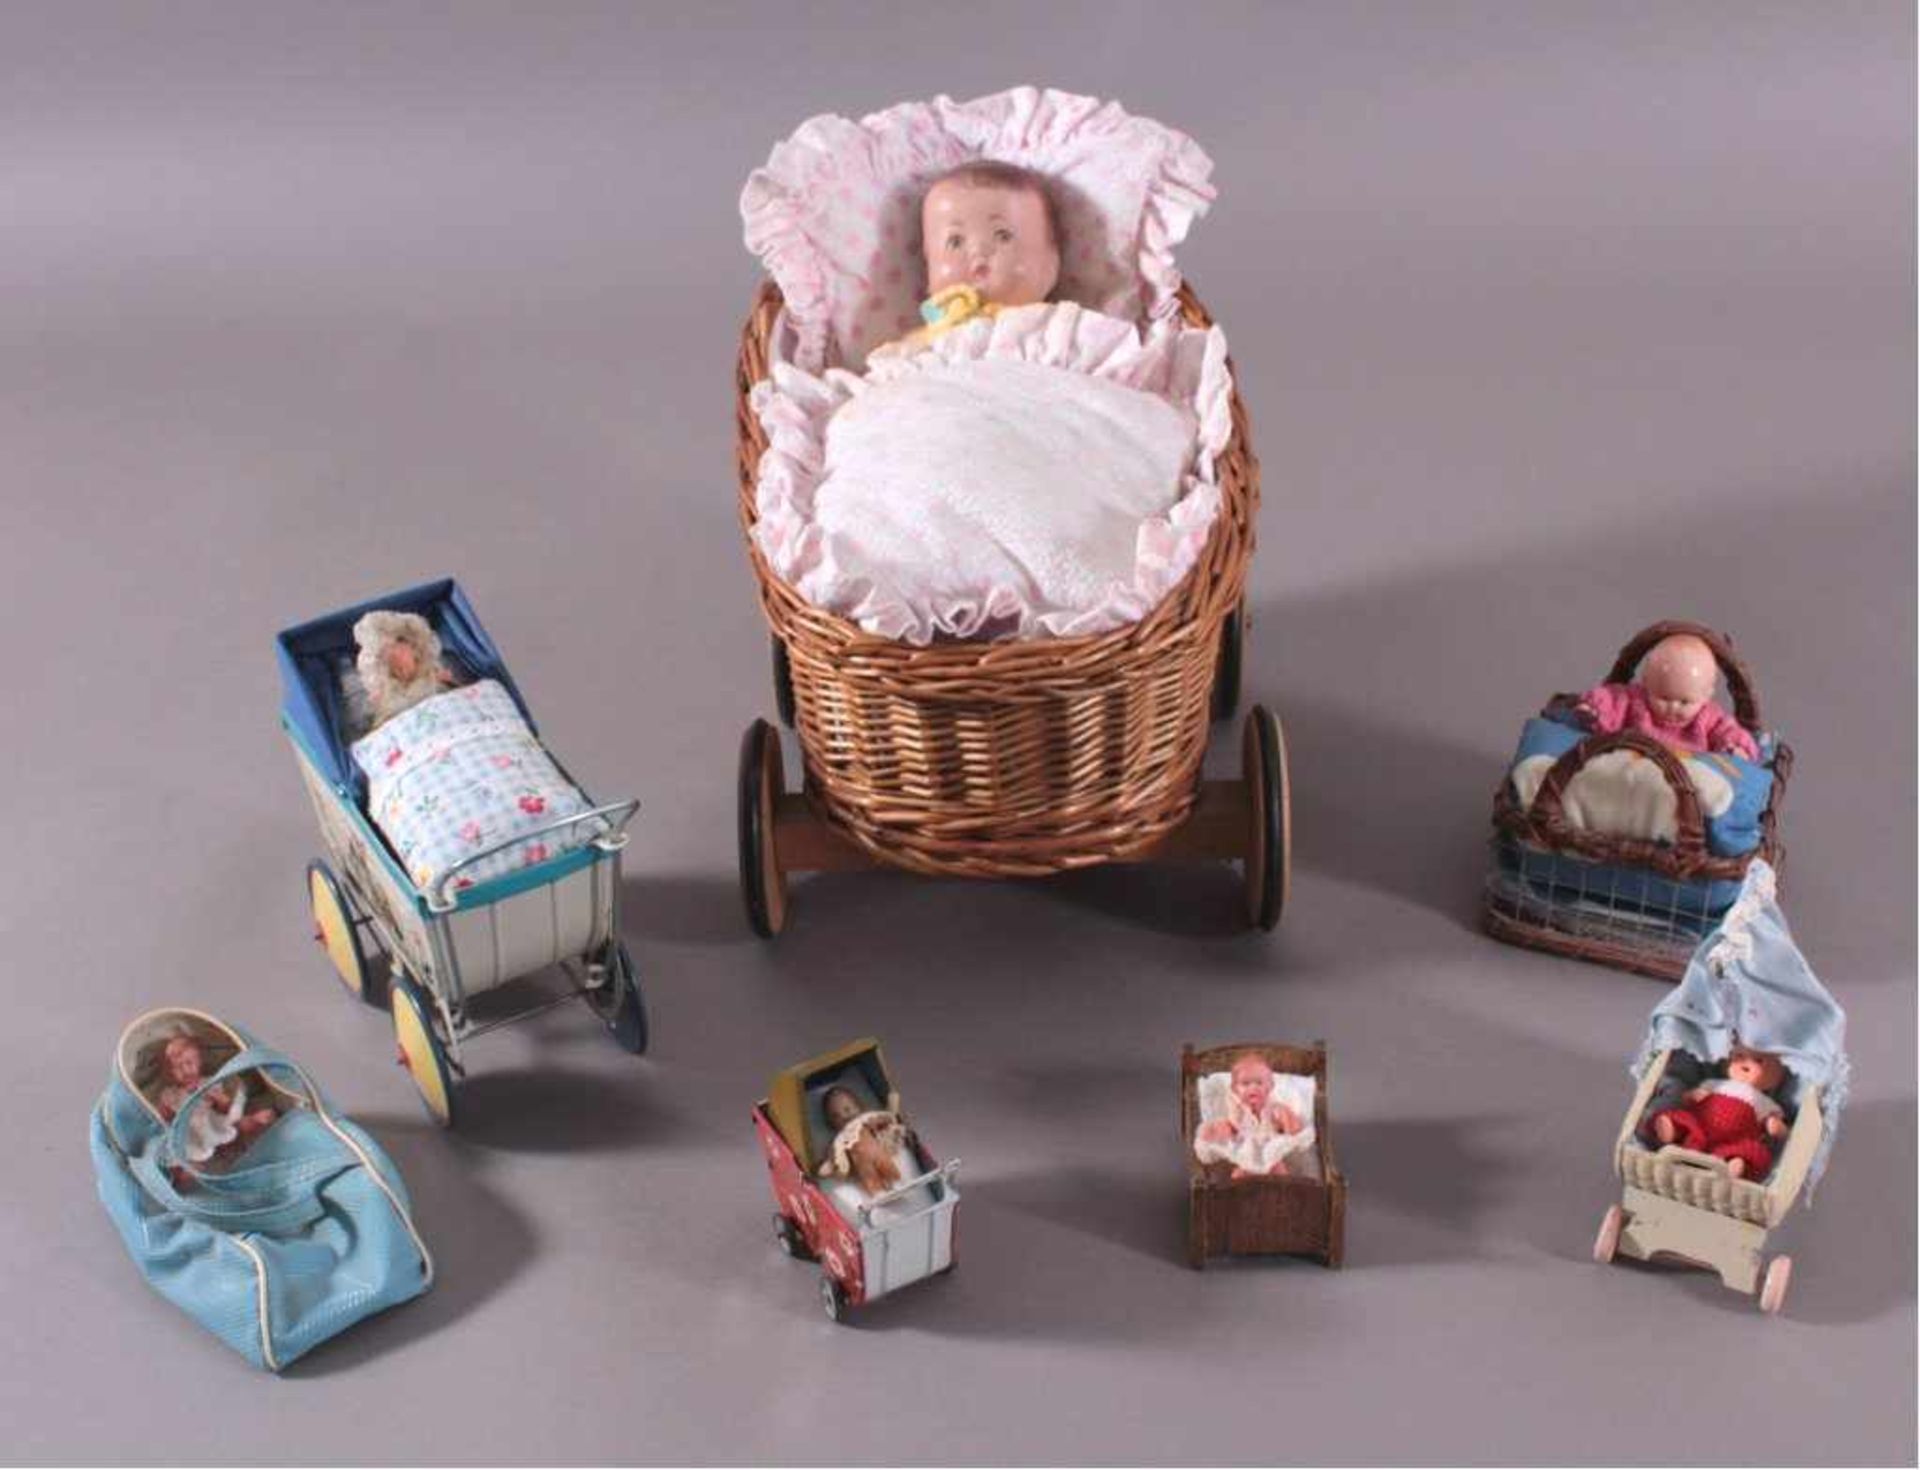 7 Puppen in PuppenwagenVerschiedene Puppenwagen / Puppenbettchen zum Teil ausBlech, ca. H- 4 cm